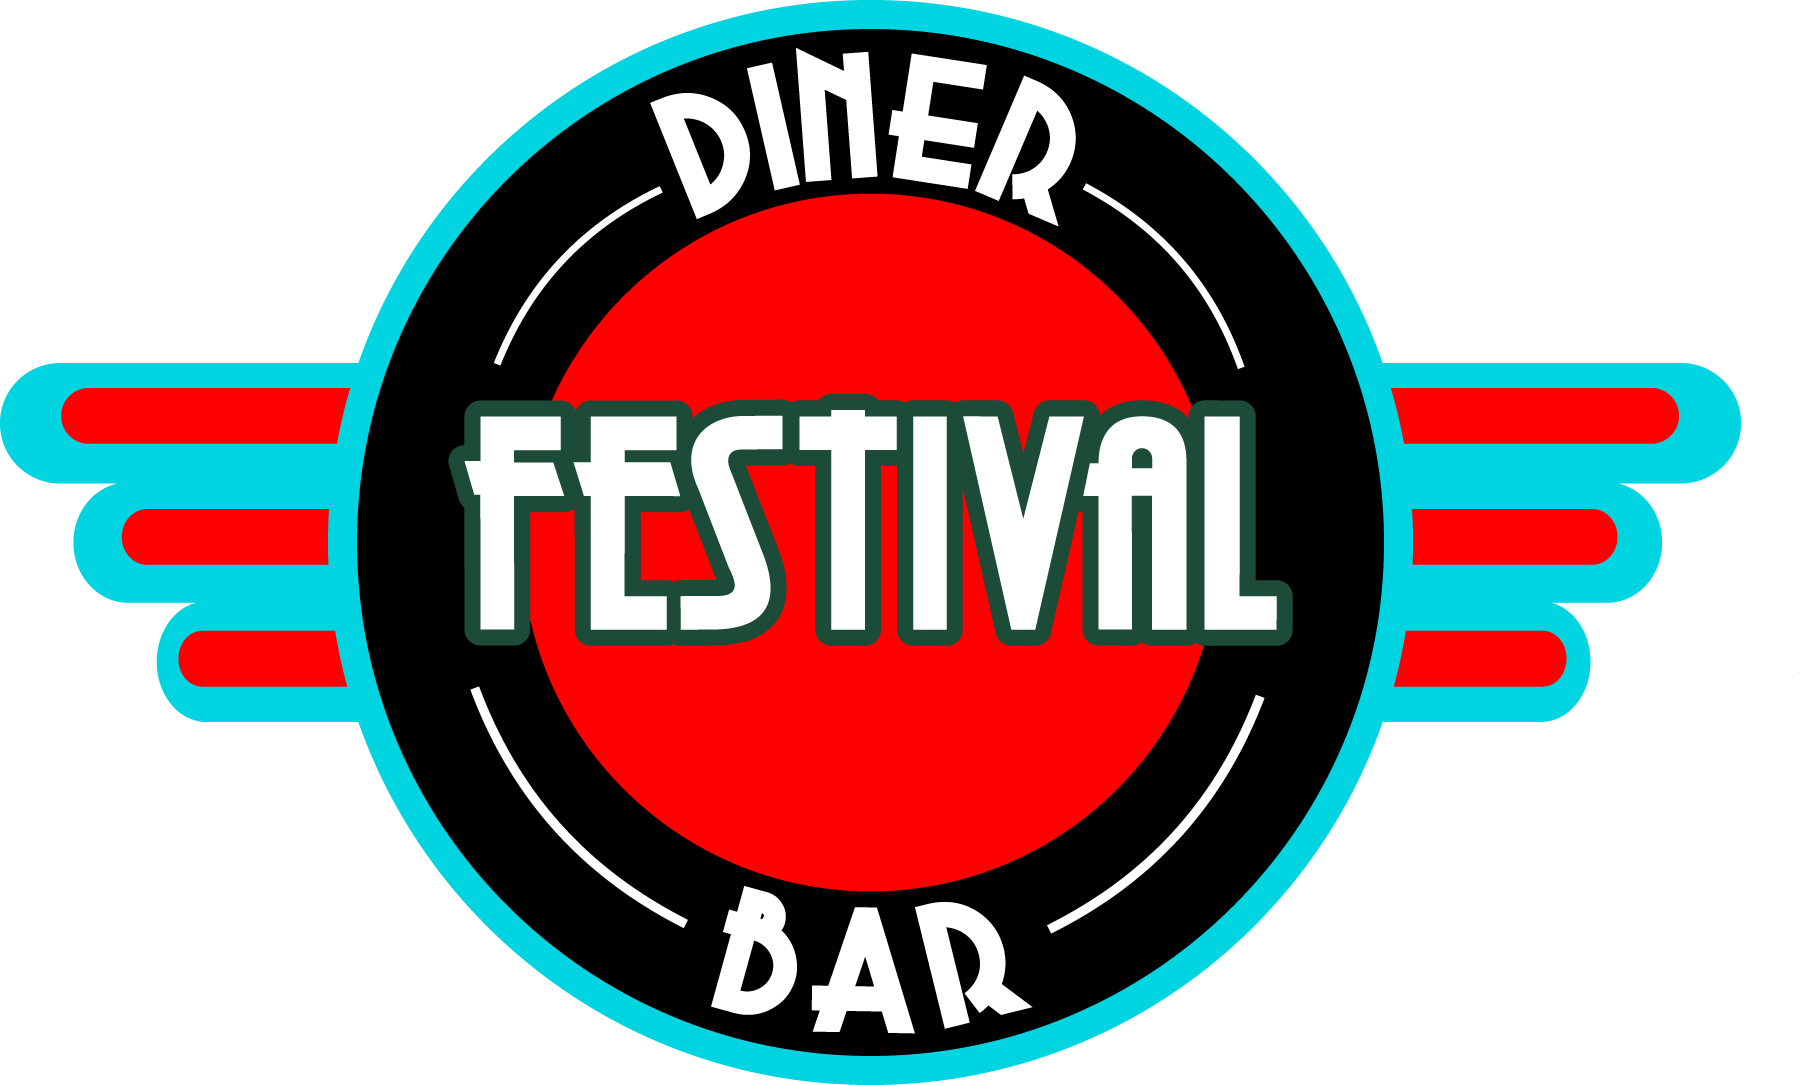 Festival Diner Bar